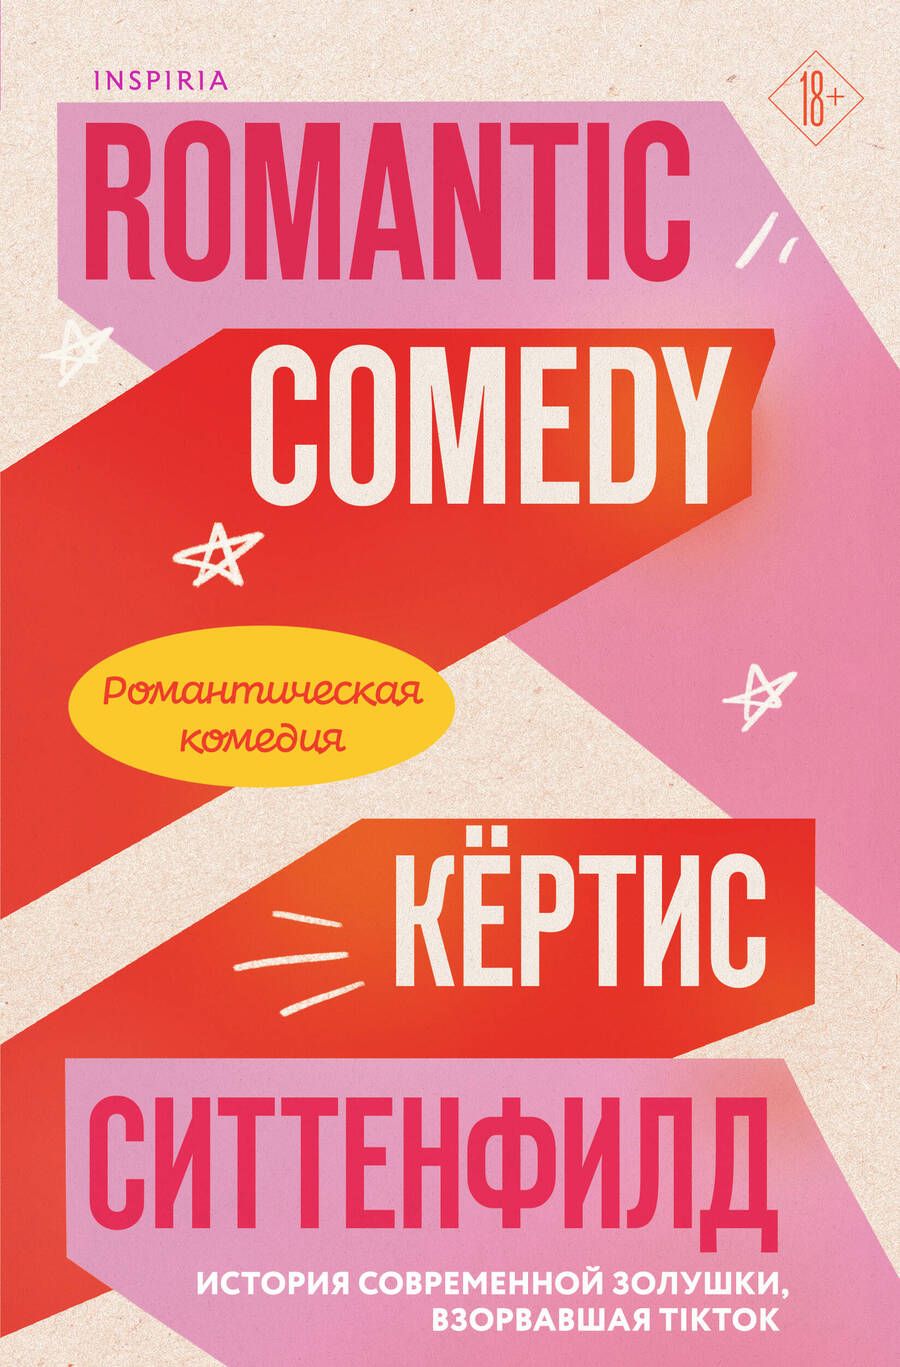 Обложка книги "Кертис Ситтенфилд: Романтическая комедия"